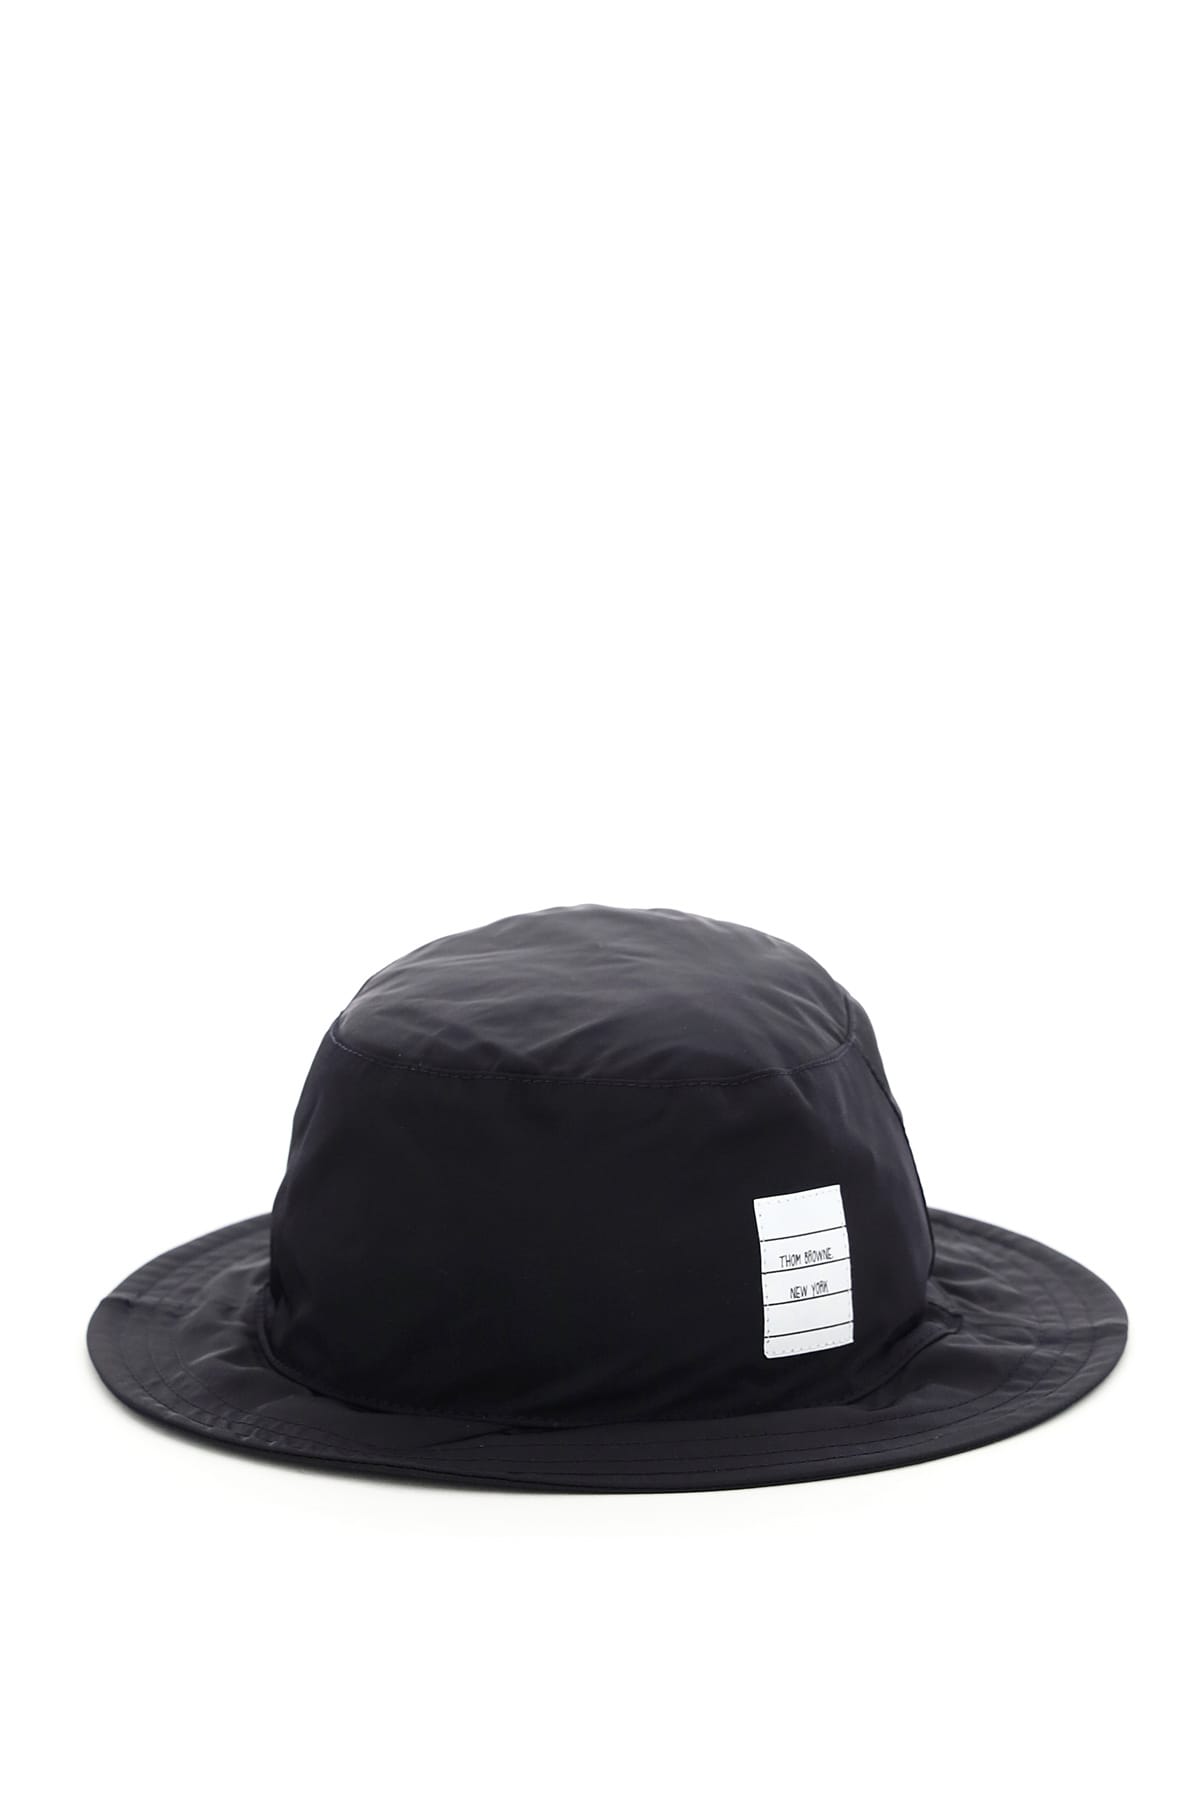 Thom Browne 4-bar Bucket Hat